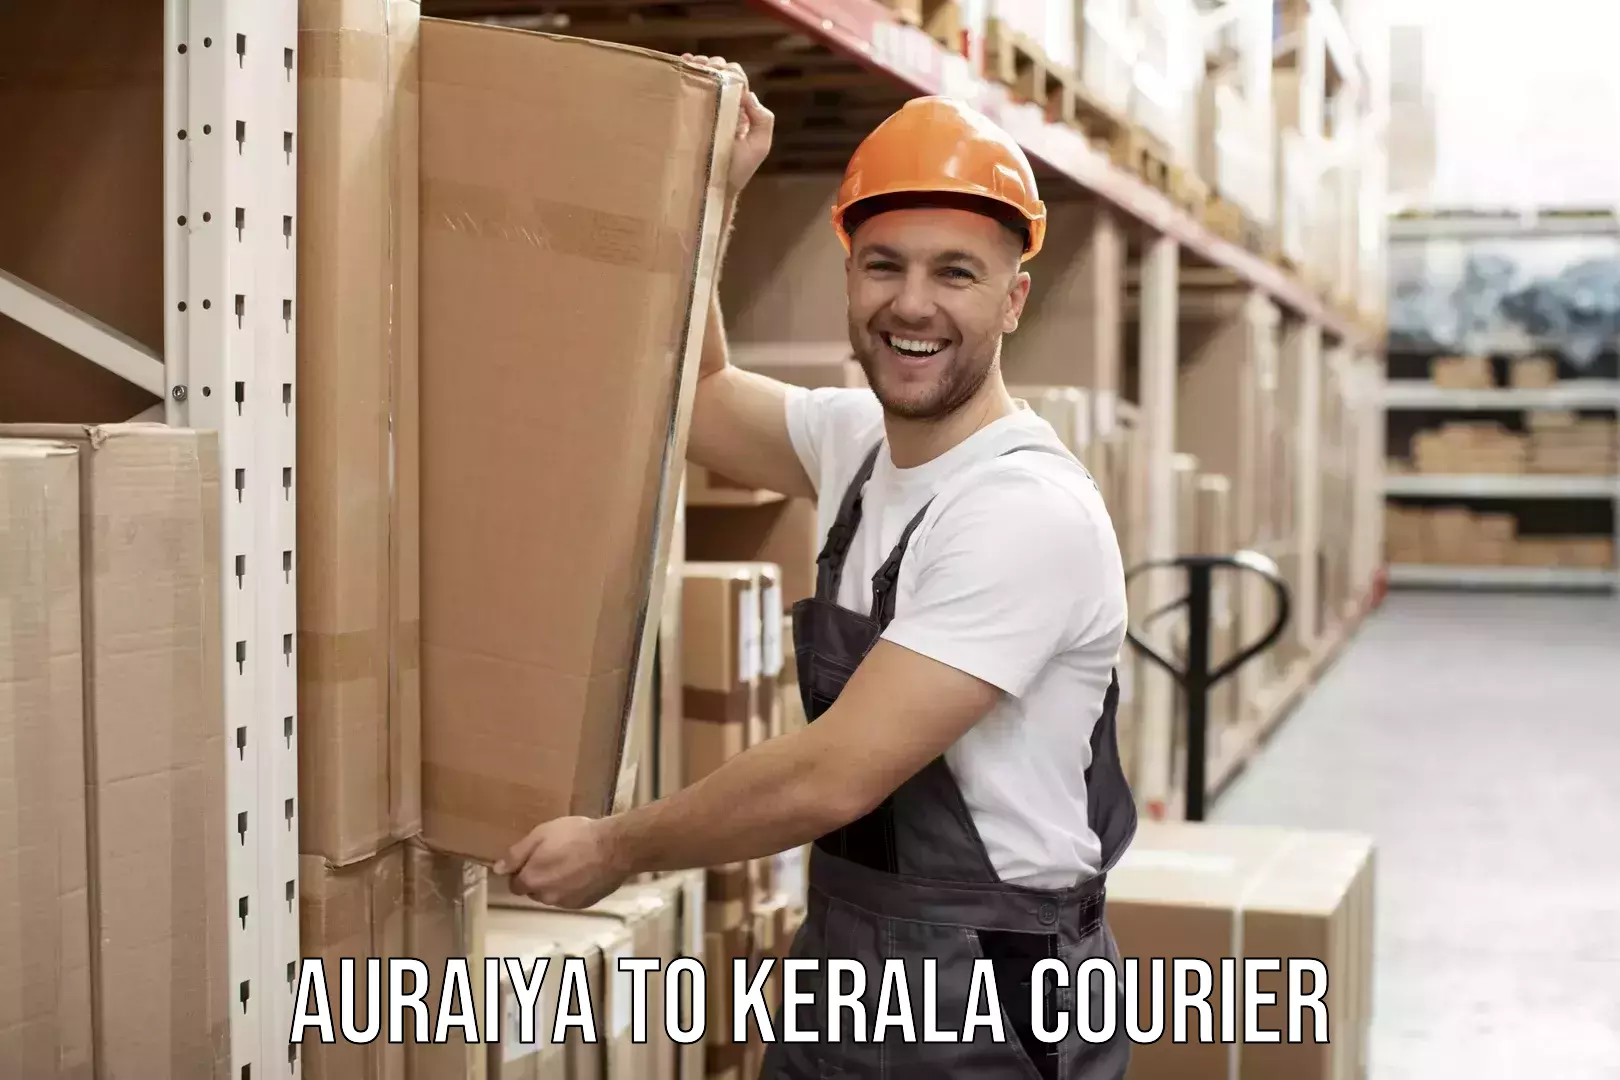 Professional moving company Auraiya to Kerala